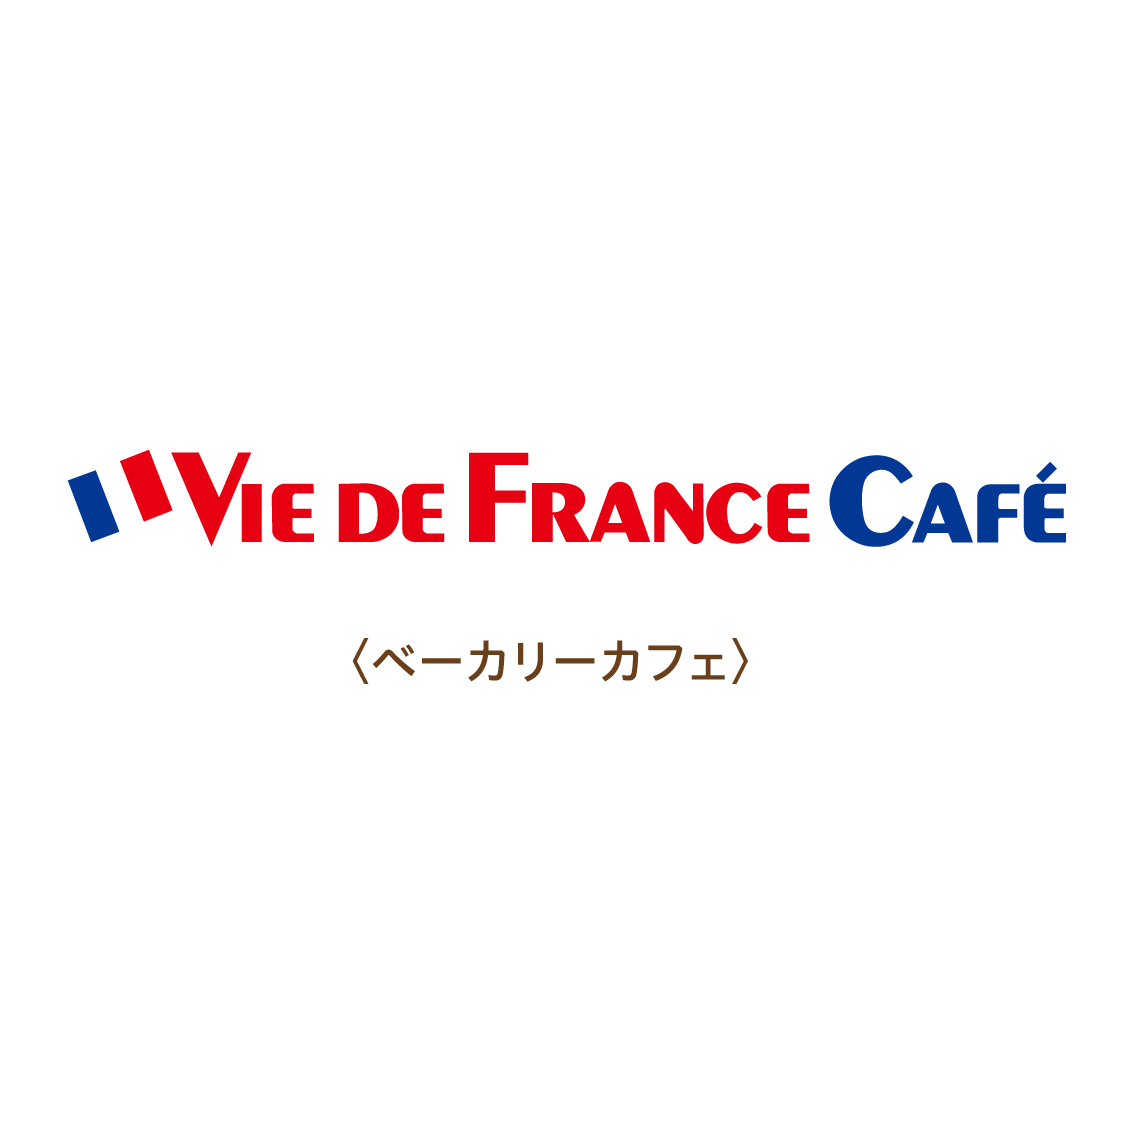 ヴィド・フランスカフェ「6月の新商品」